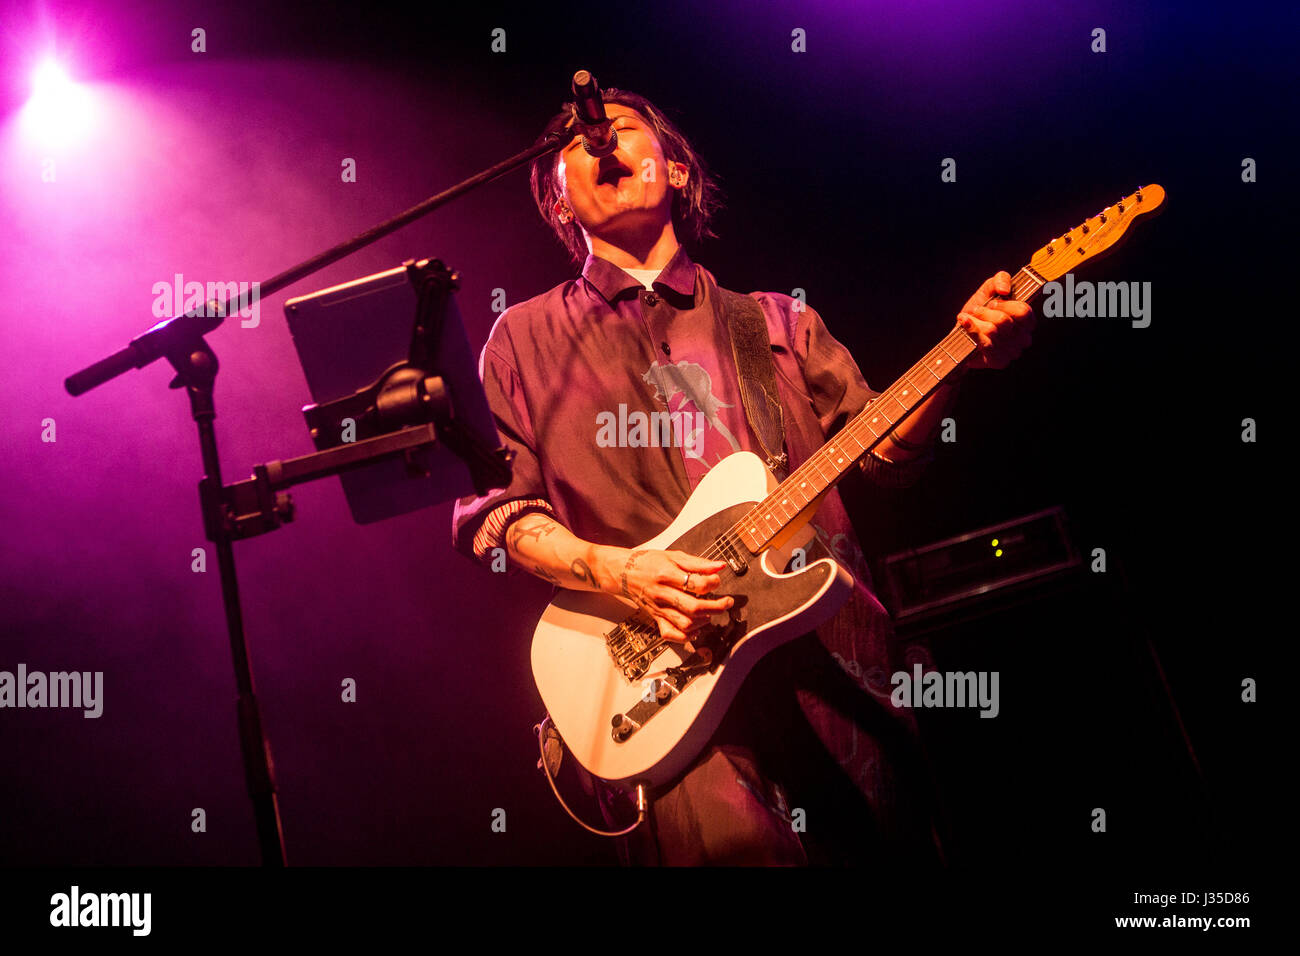 Milan, Italy. 2nd May, 2017. Japanese singer-songwriter Miyavi, real name Takamasa Ishihara, performs live at Alcatraz Credit: Mairo Cinquetti/Alamy Live News Stock Photo